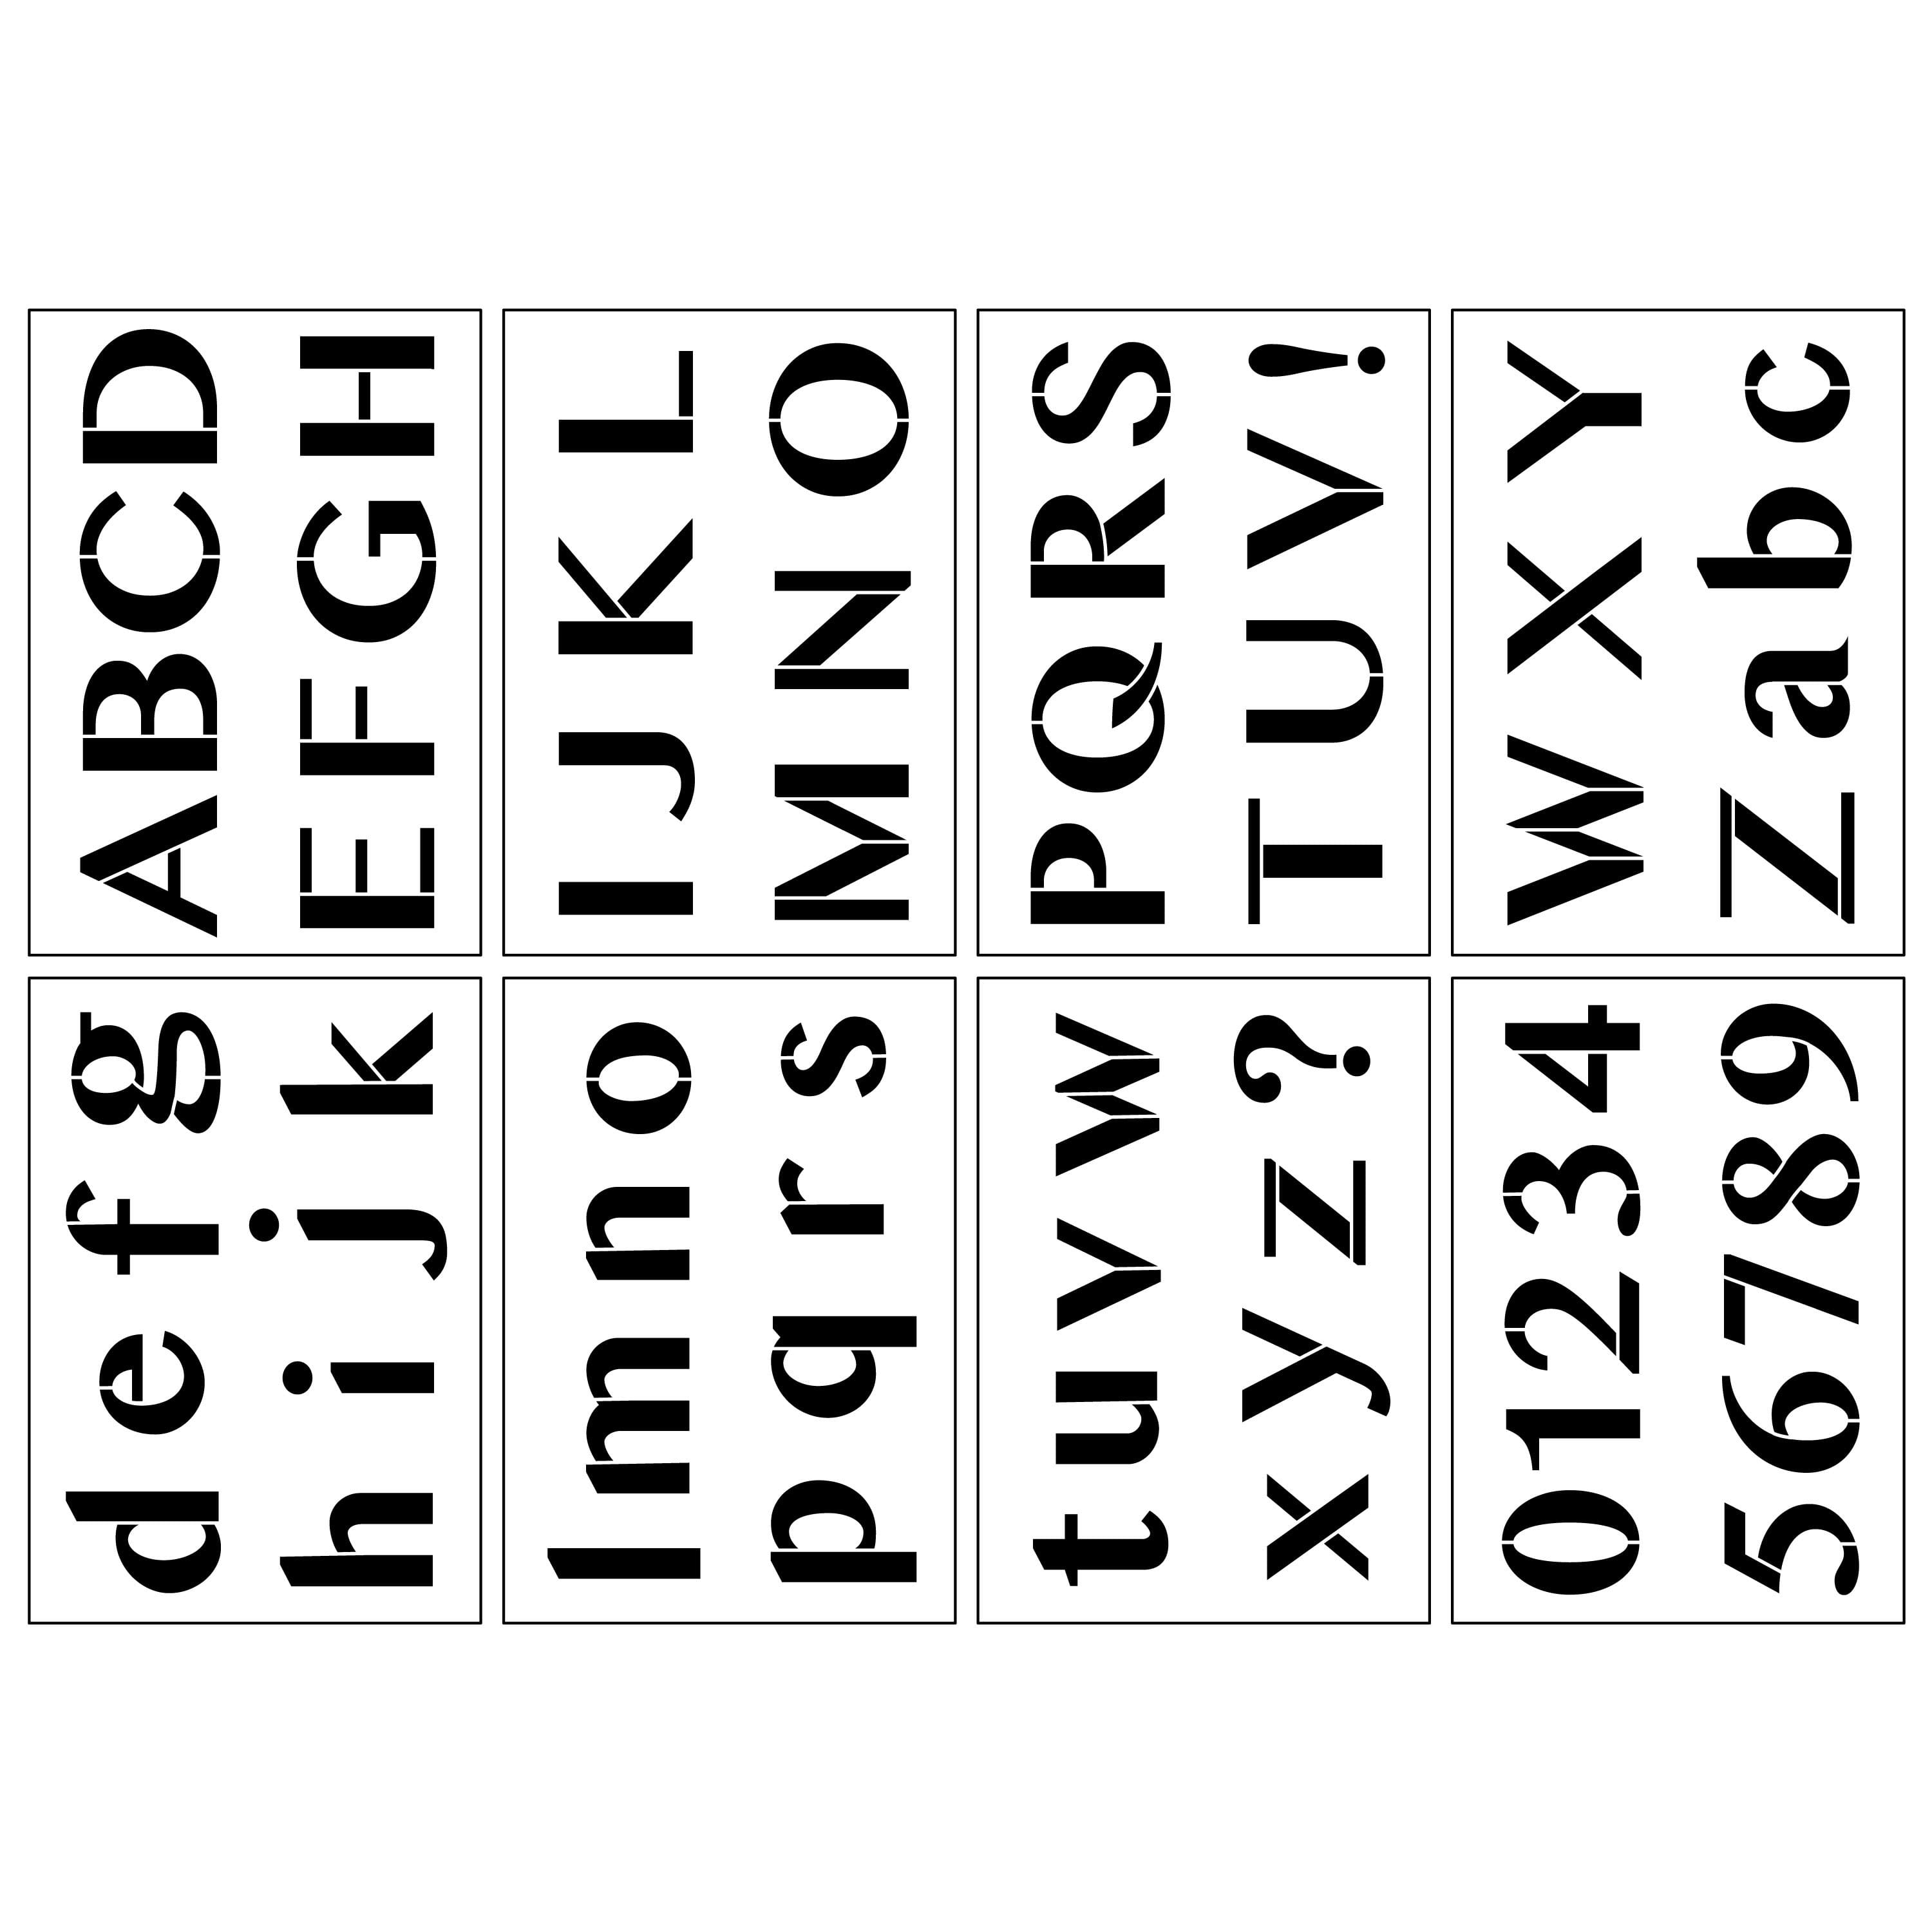 Individual Letter Stencils - 28pcs set